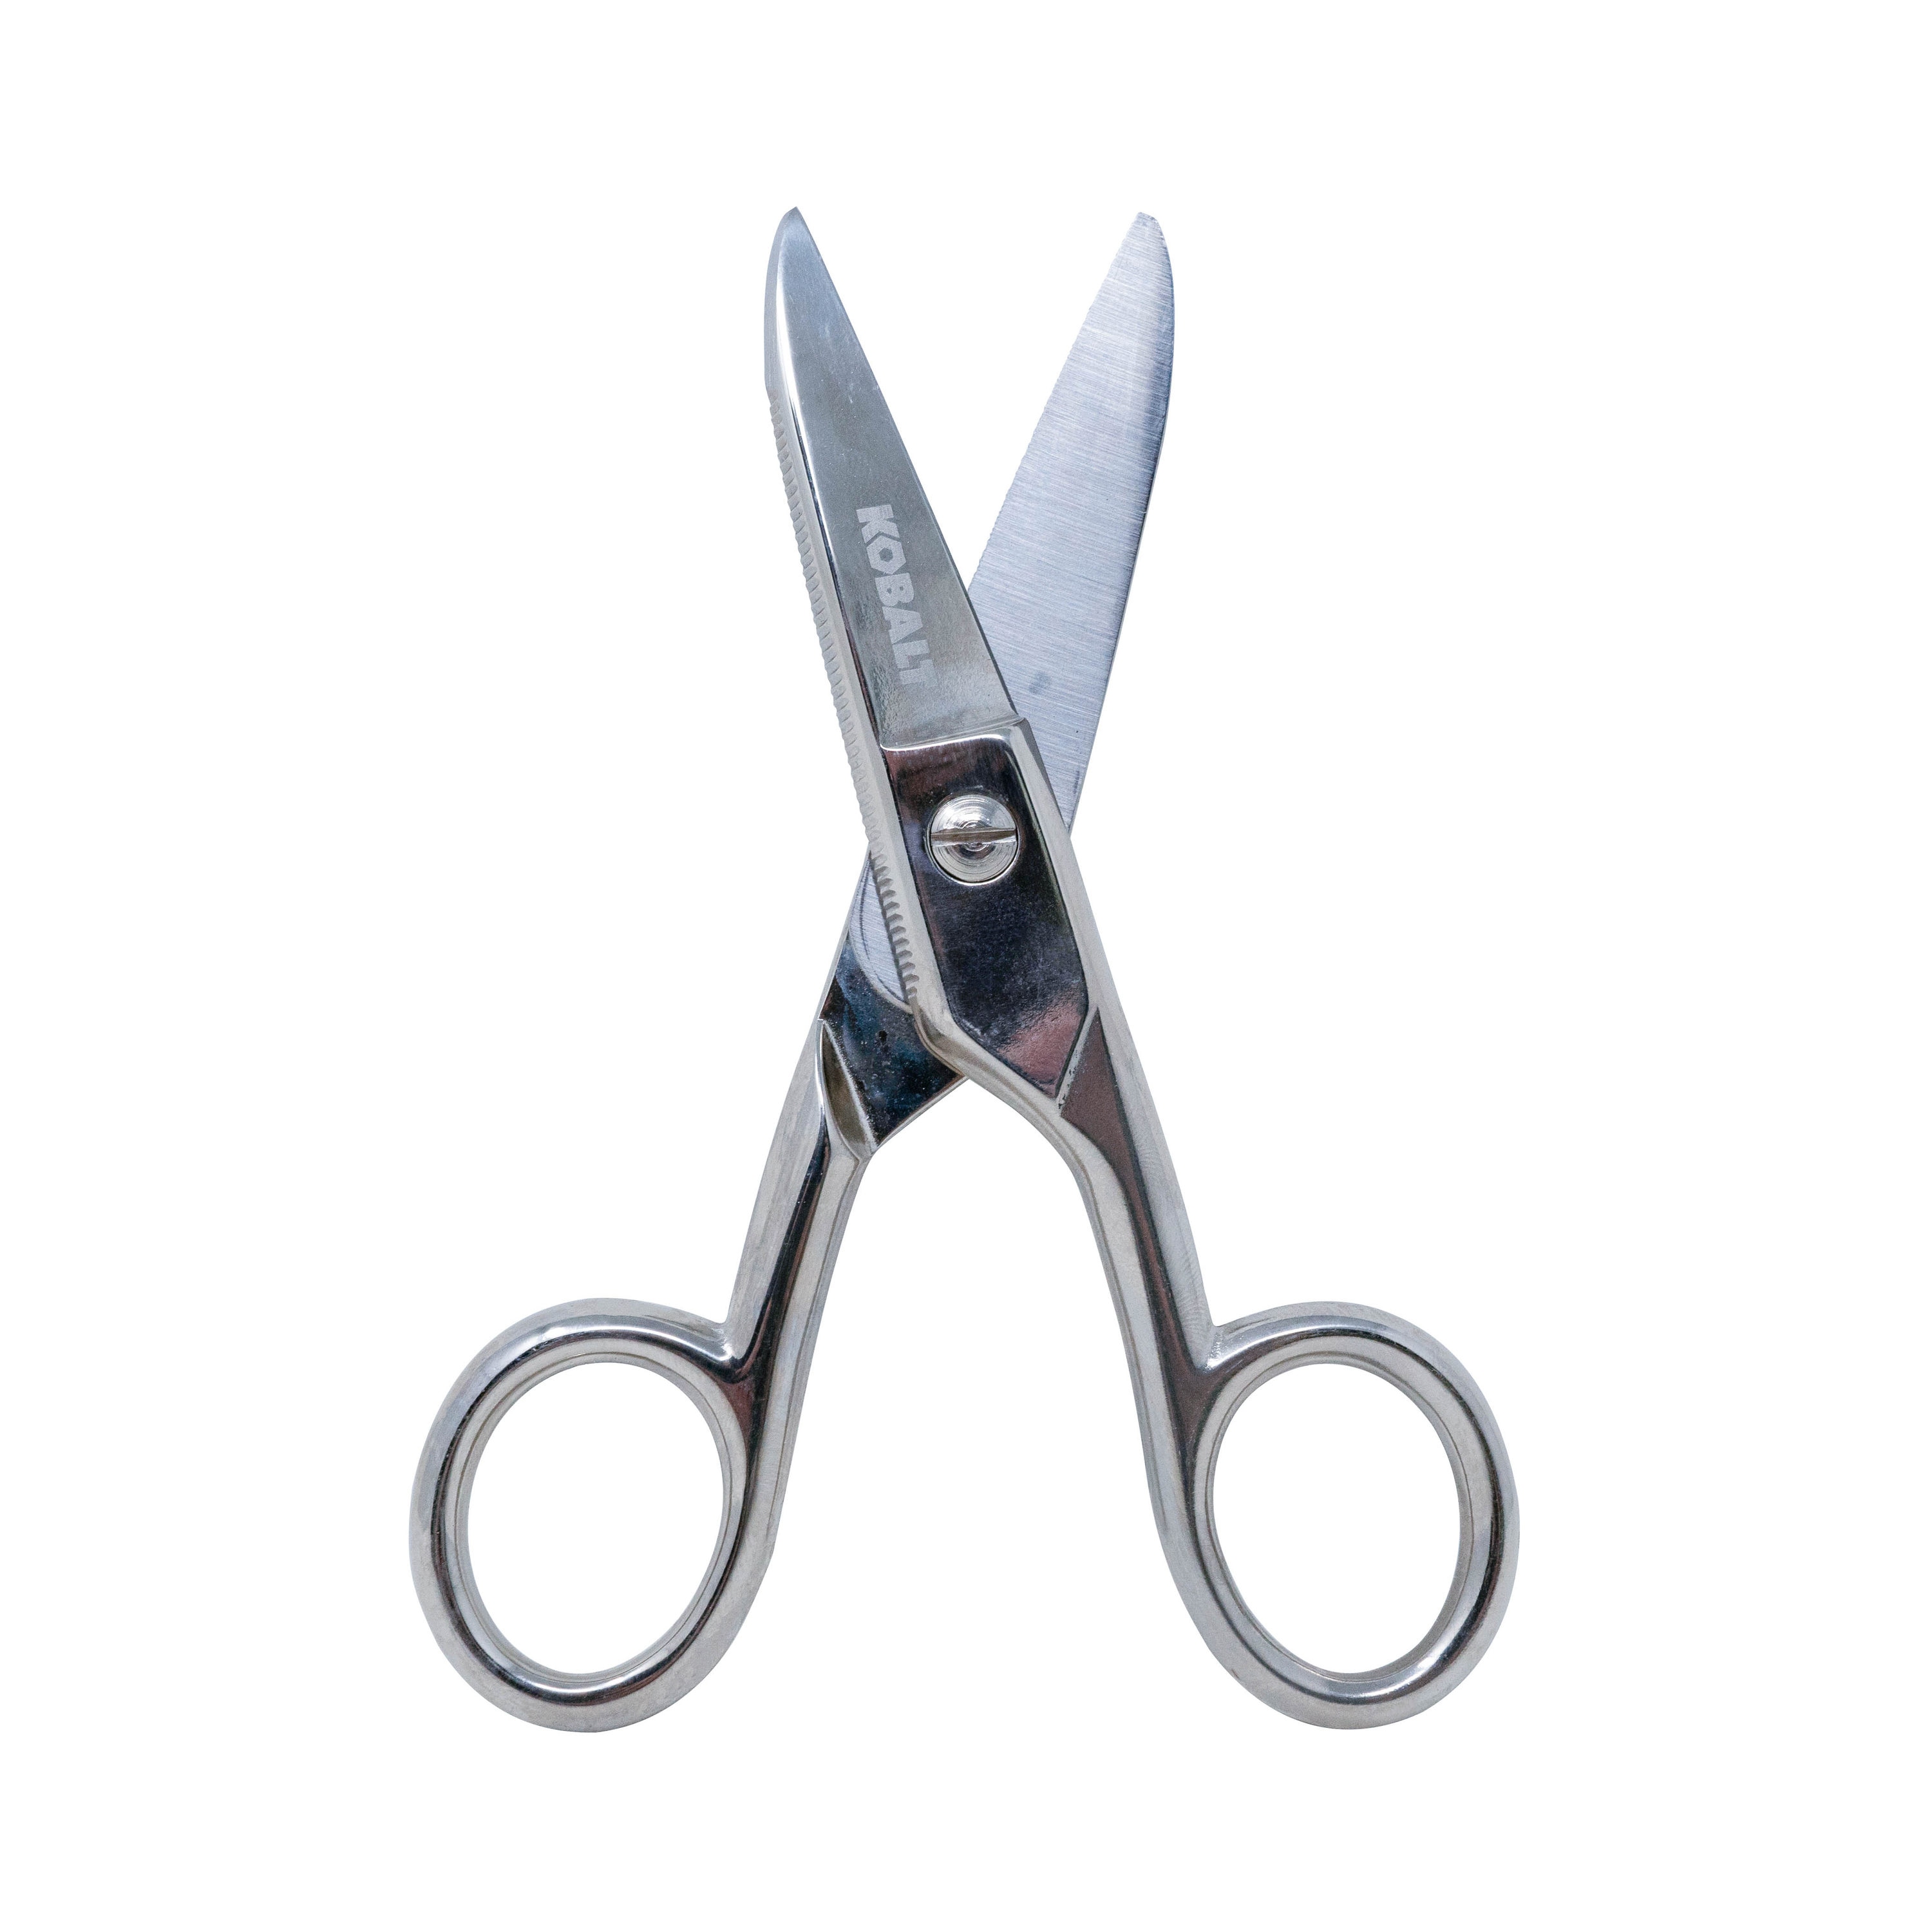 Electrician's Scissors - Capri Tools